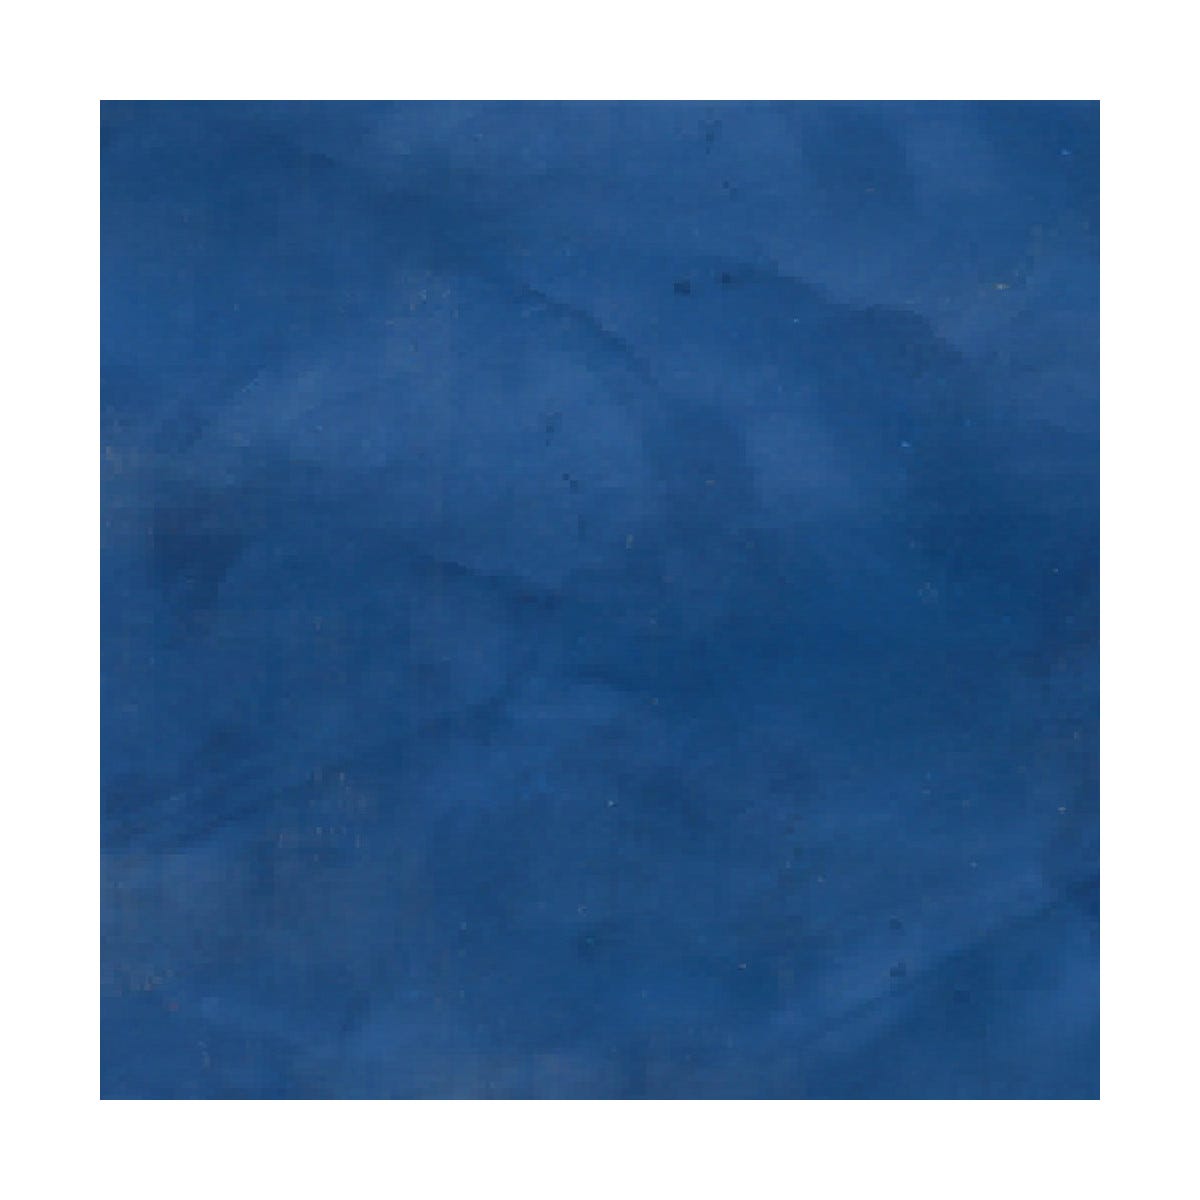 Kit stuc venitien enduit stucco spatulable décoratif - KIT STUCCOLIS Bleu Capri - kit jusqu'à 7 m²ARCANE INDUSTRIES 1